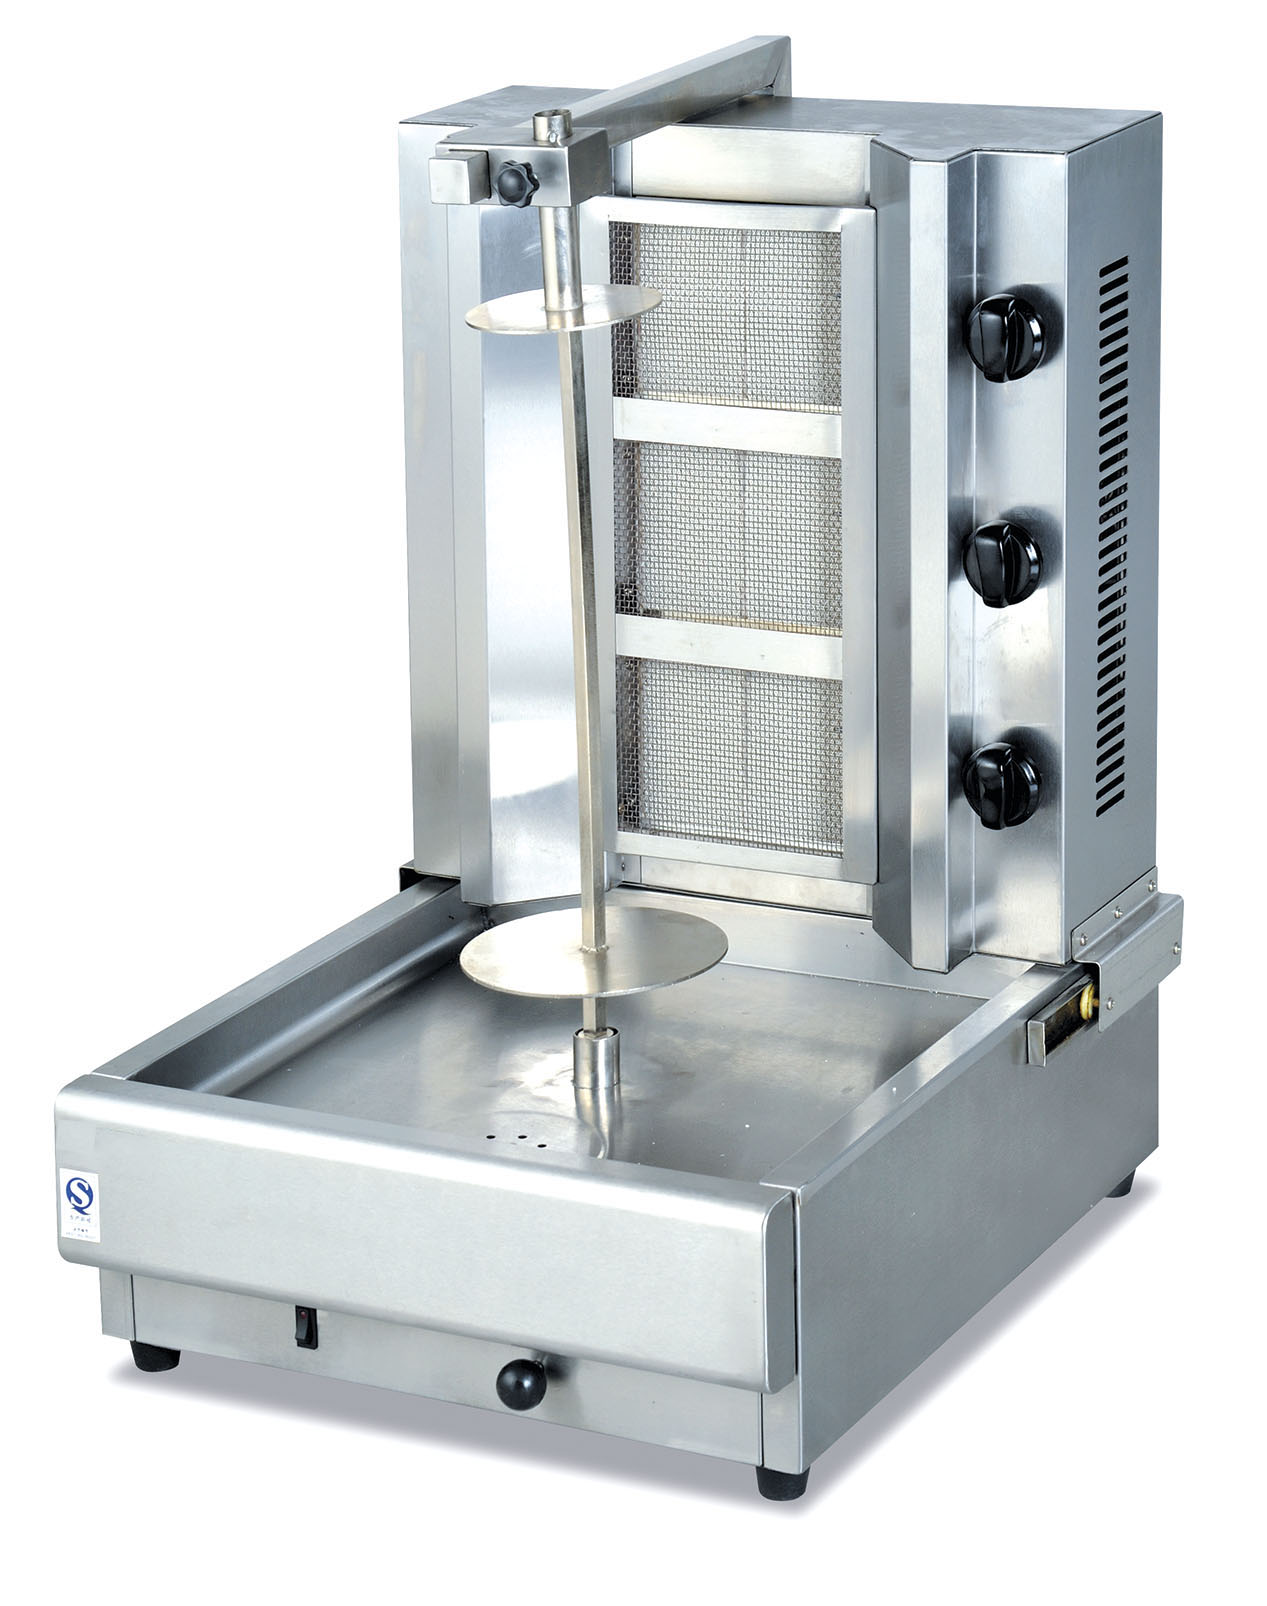 GRT-GB800 Commercial Gas Shawarma Machine